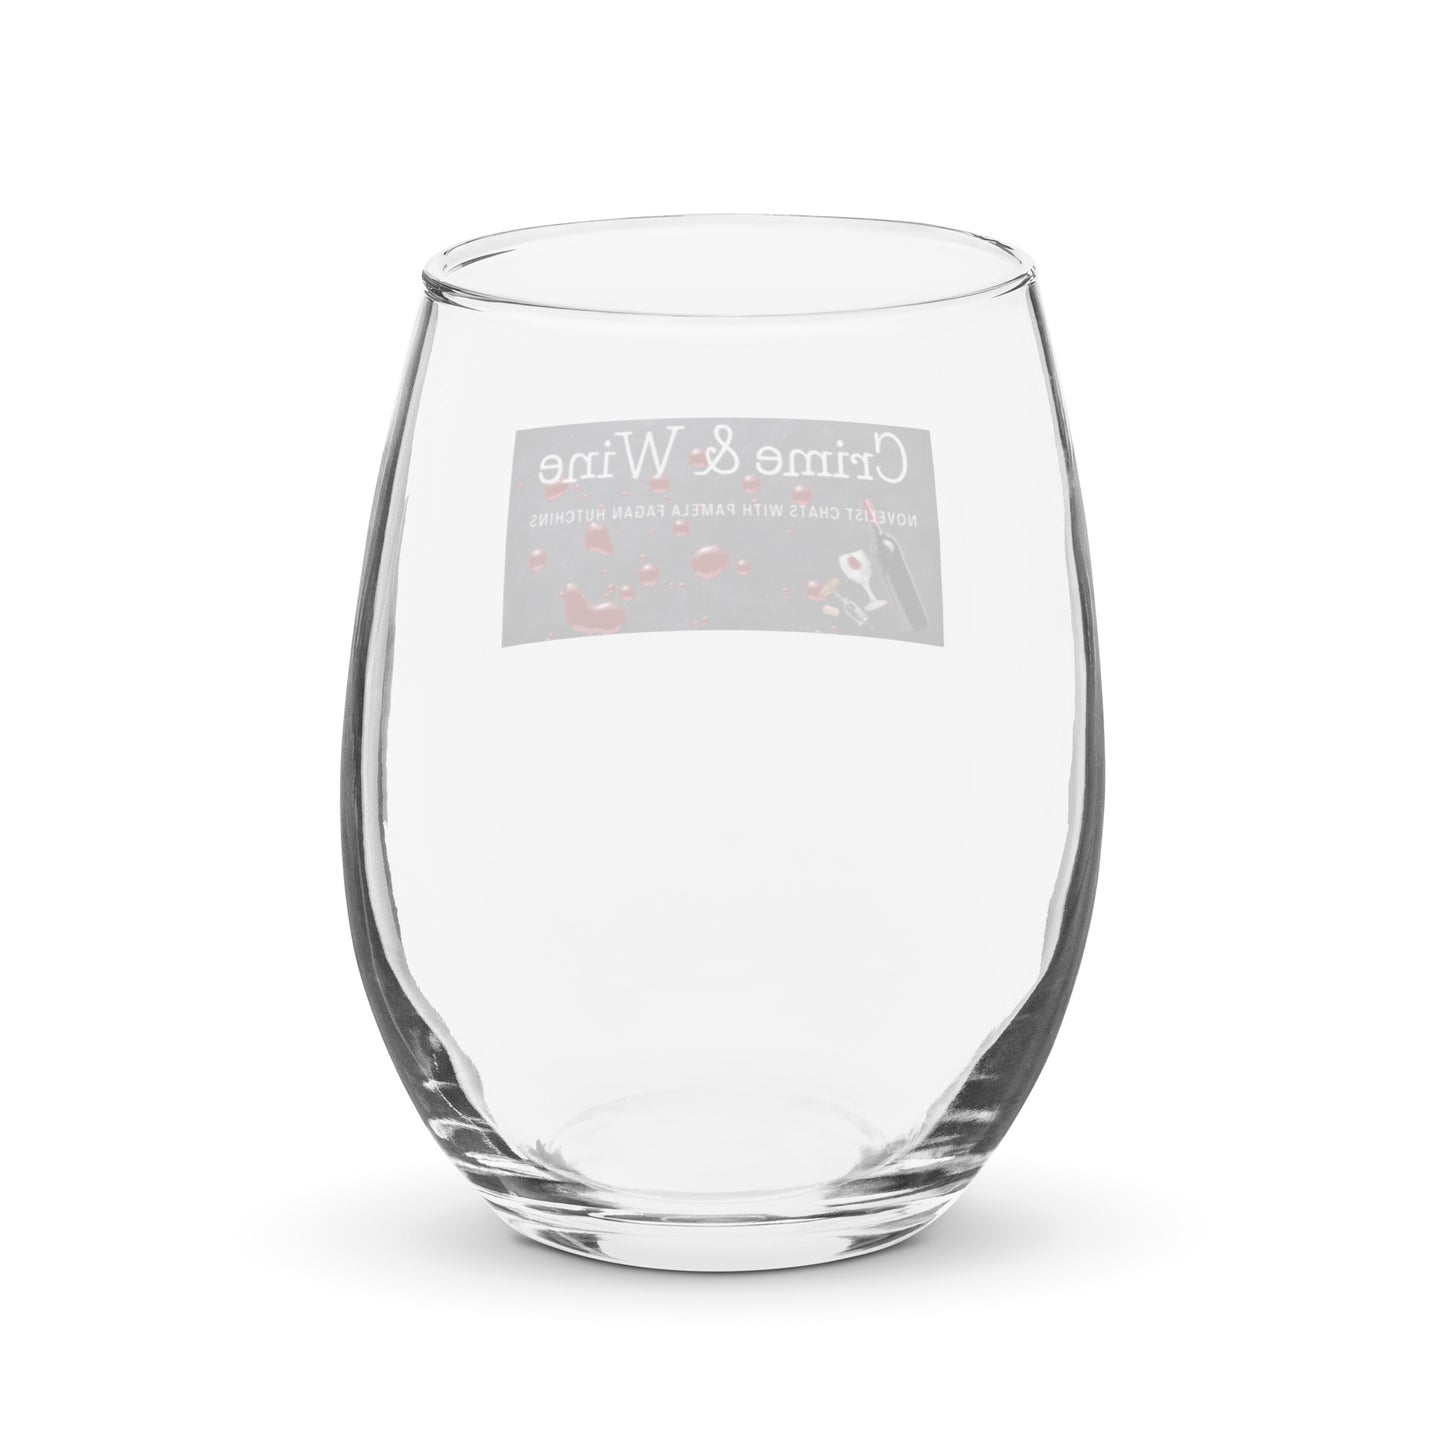 Crime & Wine Stemless wine glass